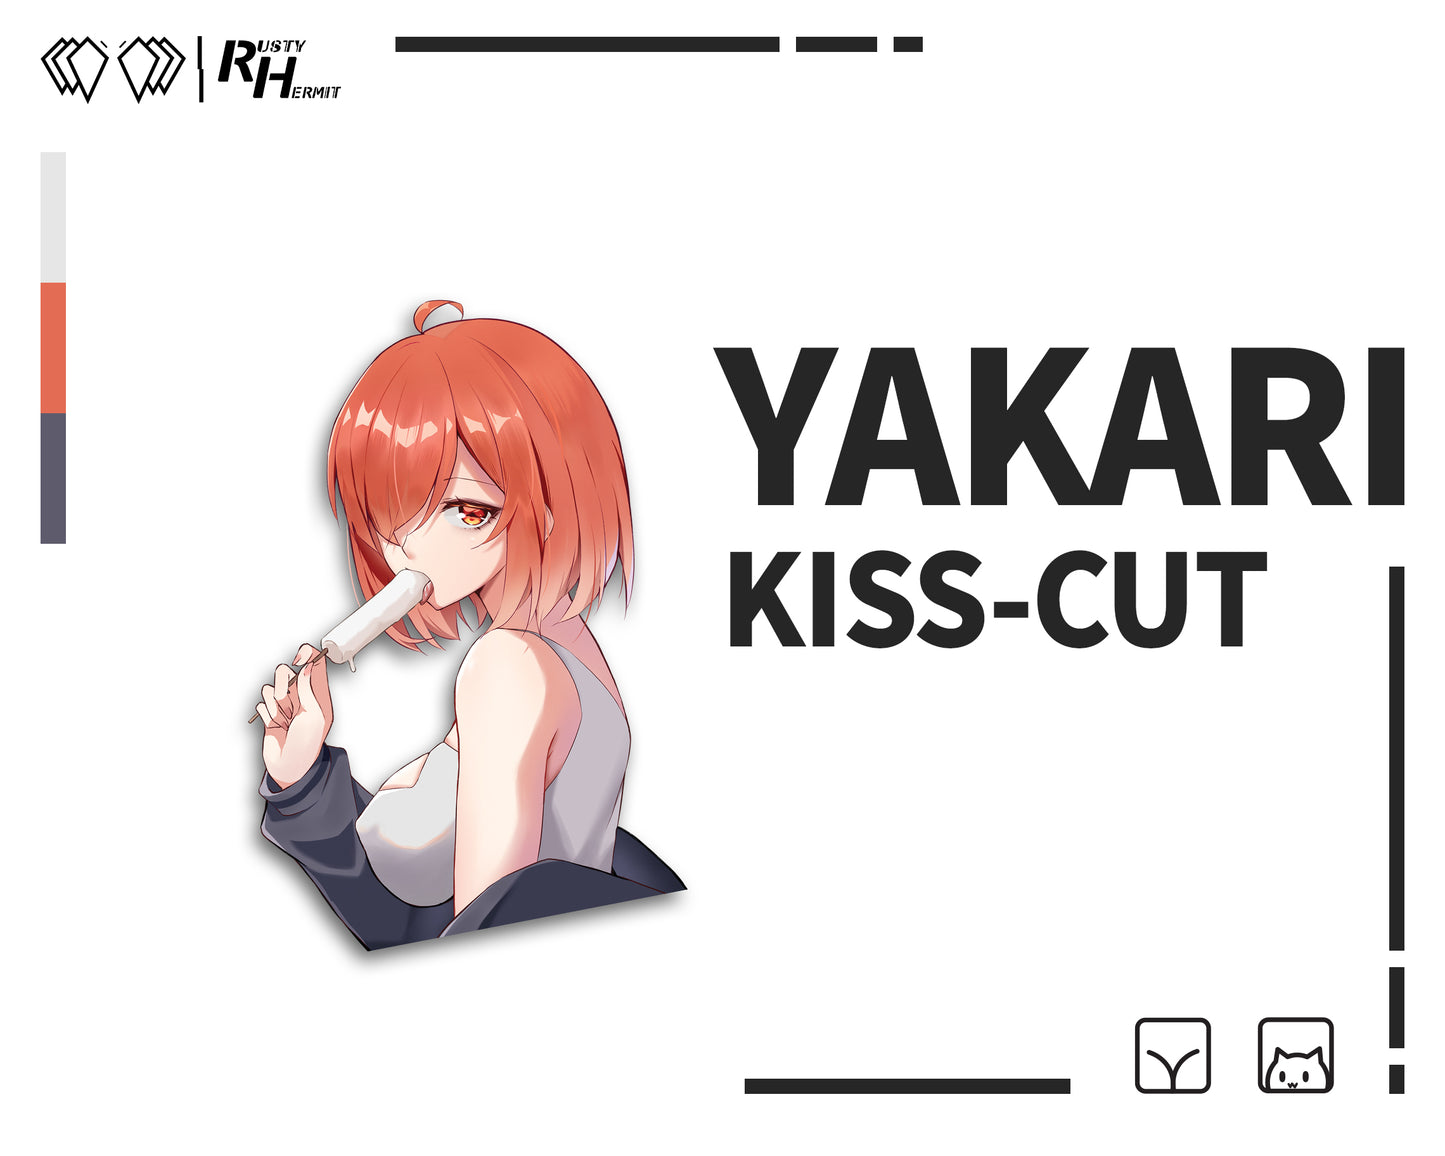 Yakari "Summer" Kiss-cut